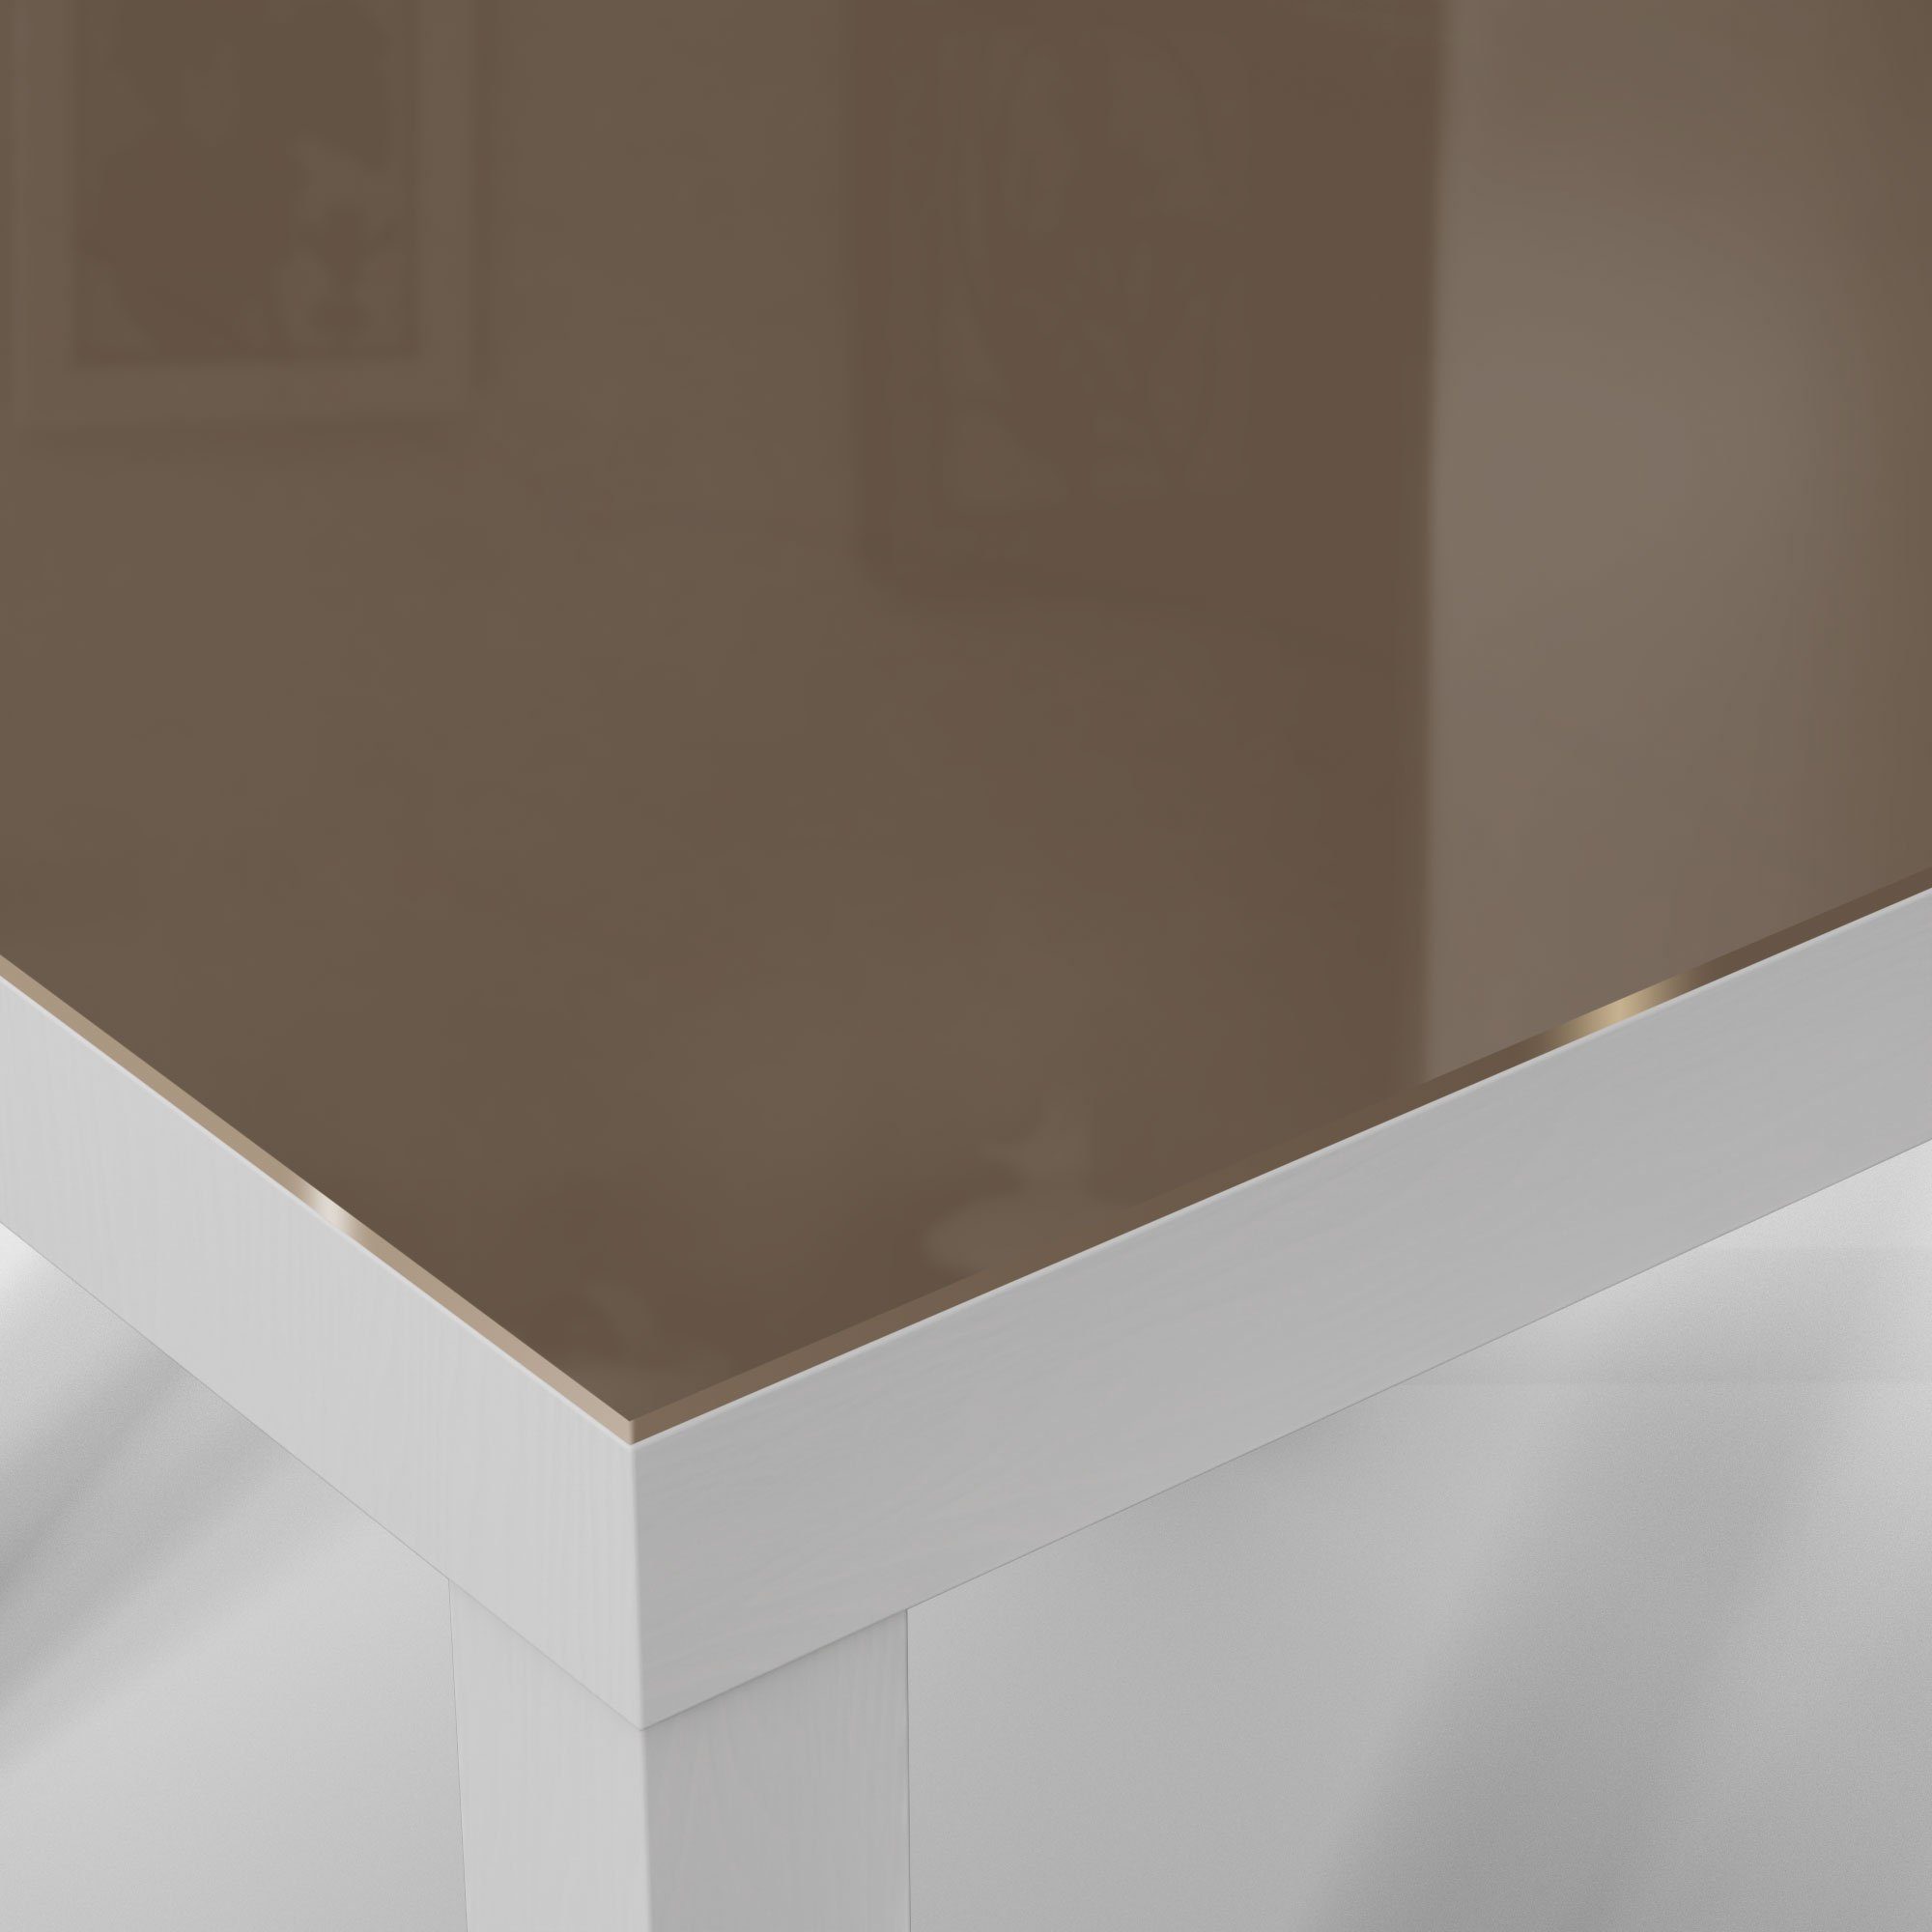 - DEQORI Beistelltisch modern Braun', 'Unifarben Glastisch Weiß Couchtisch Glas